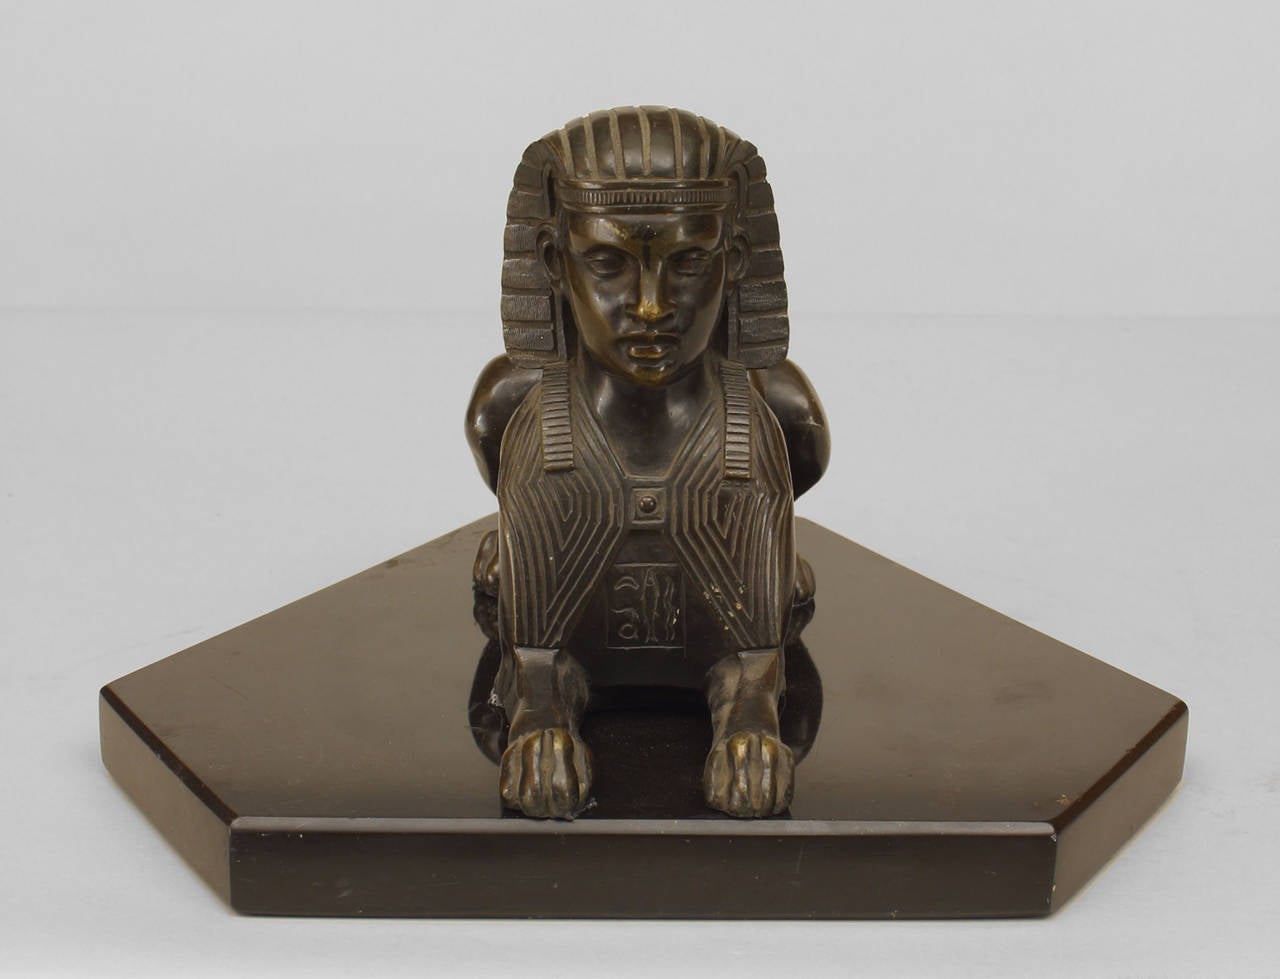 Französische Empire-Stil (19. Jh.) Bronze liegende Sphinx-Figur auf einem rechteckigen schwarzen Marmorsockel
